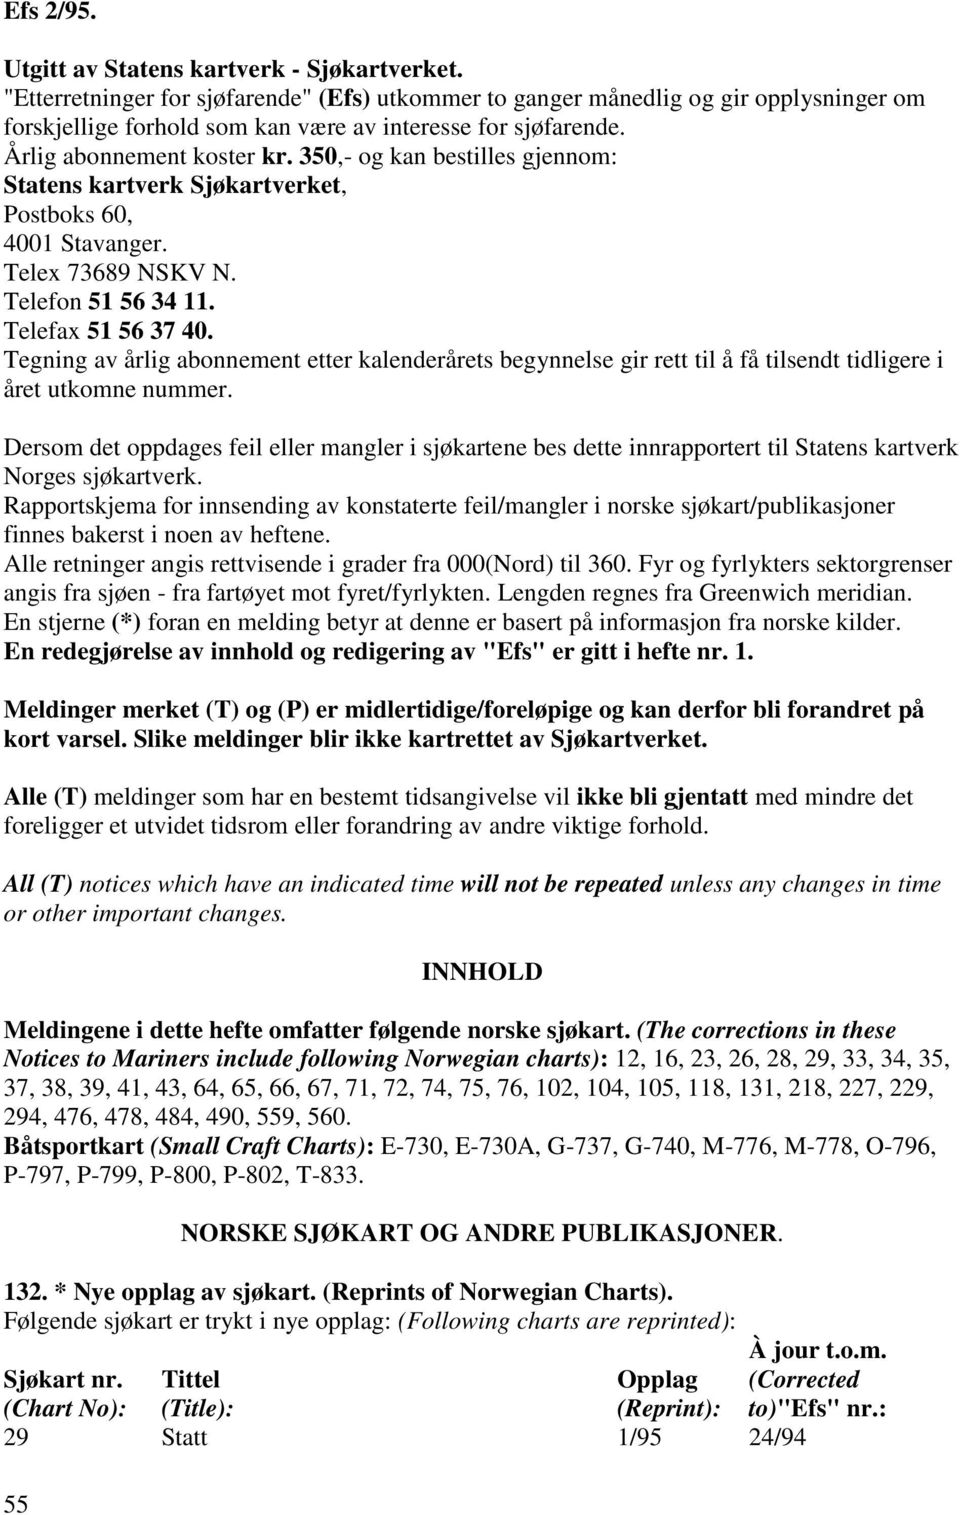 350,- og kan bestilles gjennom: Statens kartverk Sjøkartverket, Postboks 60, 4001 Stavanger. Telex 73689 NSKV N. Telefon 51 56 34 11. Telefax 51 56 37 40.